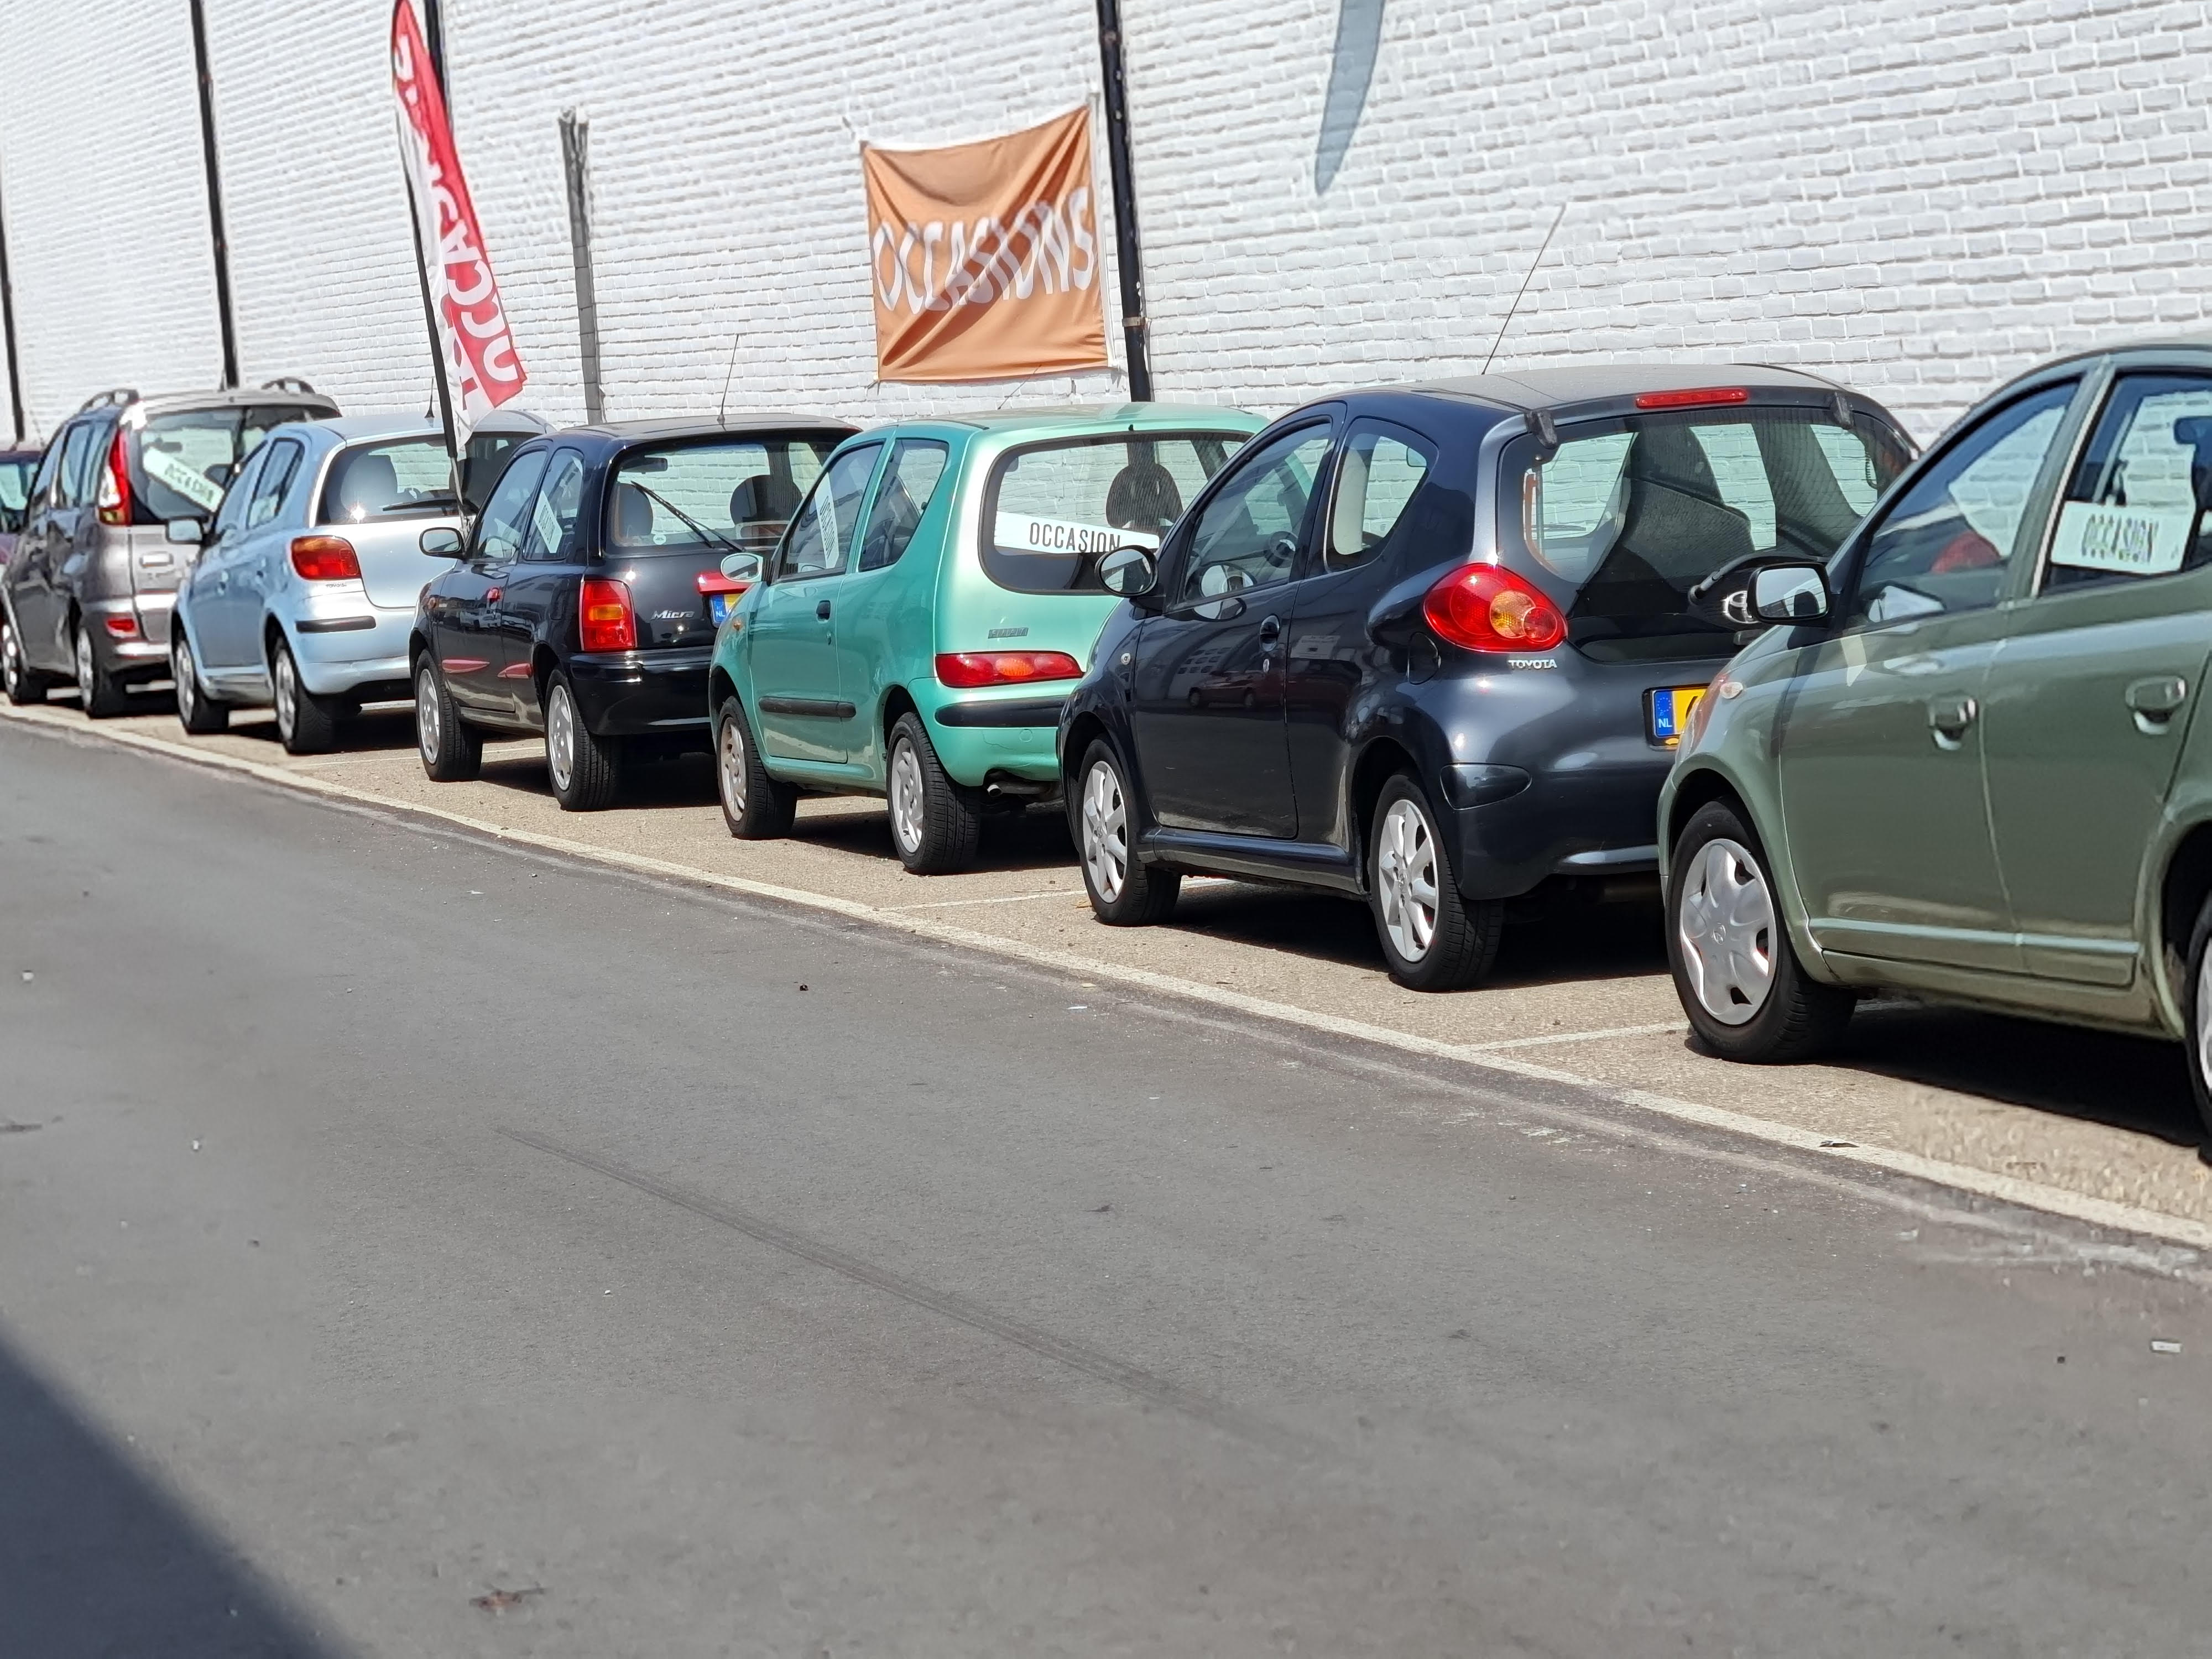 Ben jij op zoek naar een nieuwe auto? Kom eens kijken bij de autodealer in Katwijk: De Dijk Auto’s